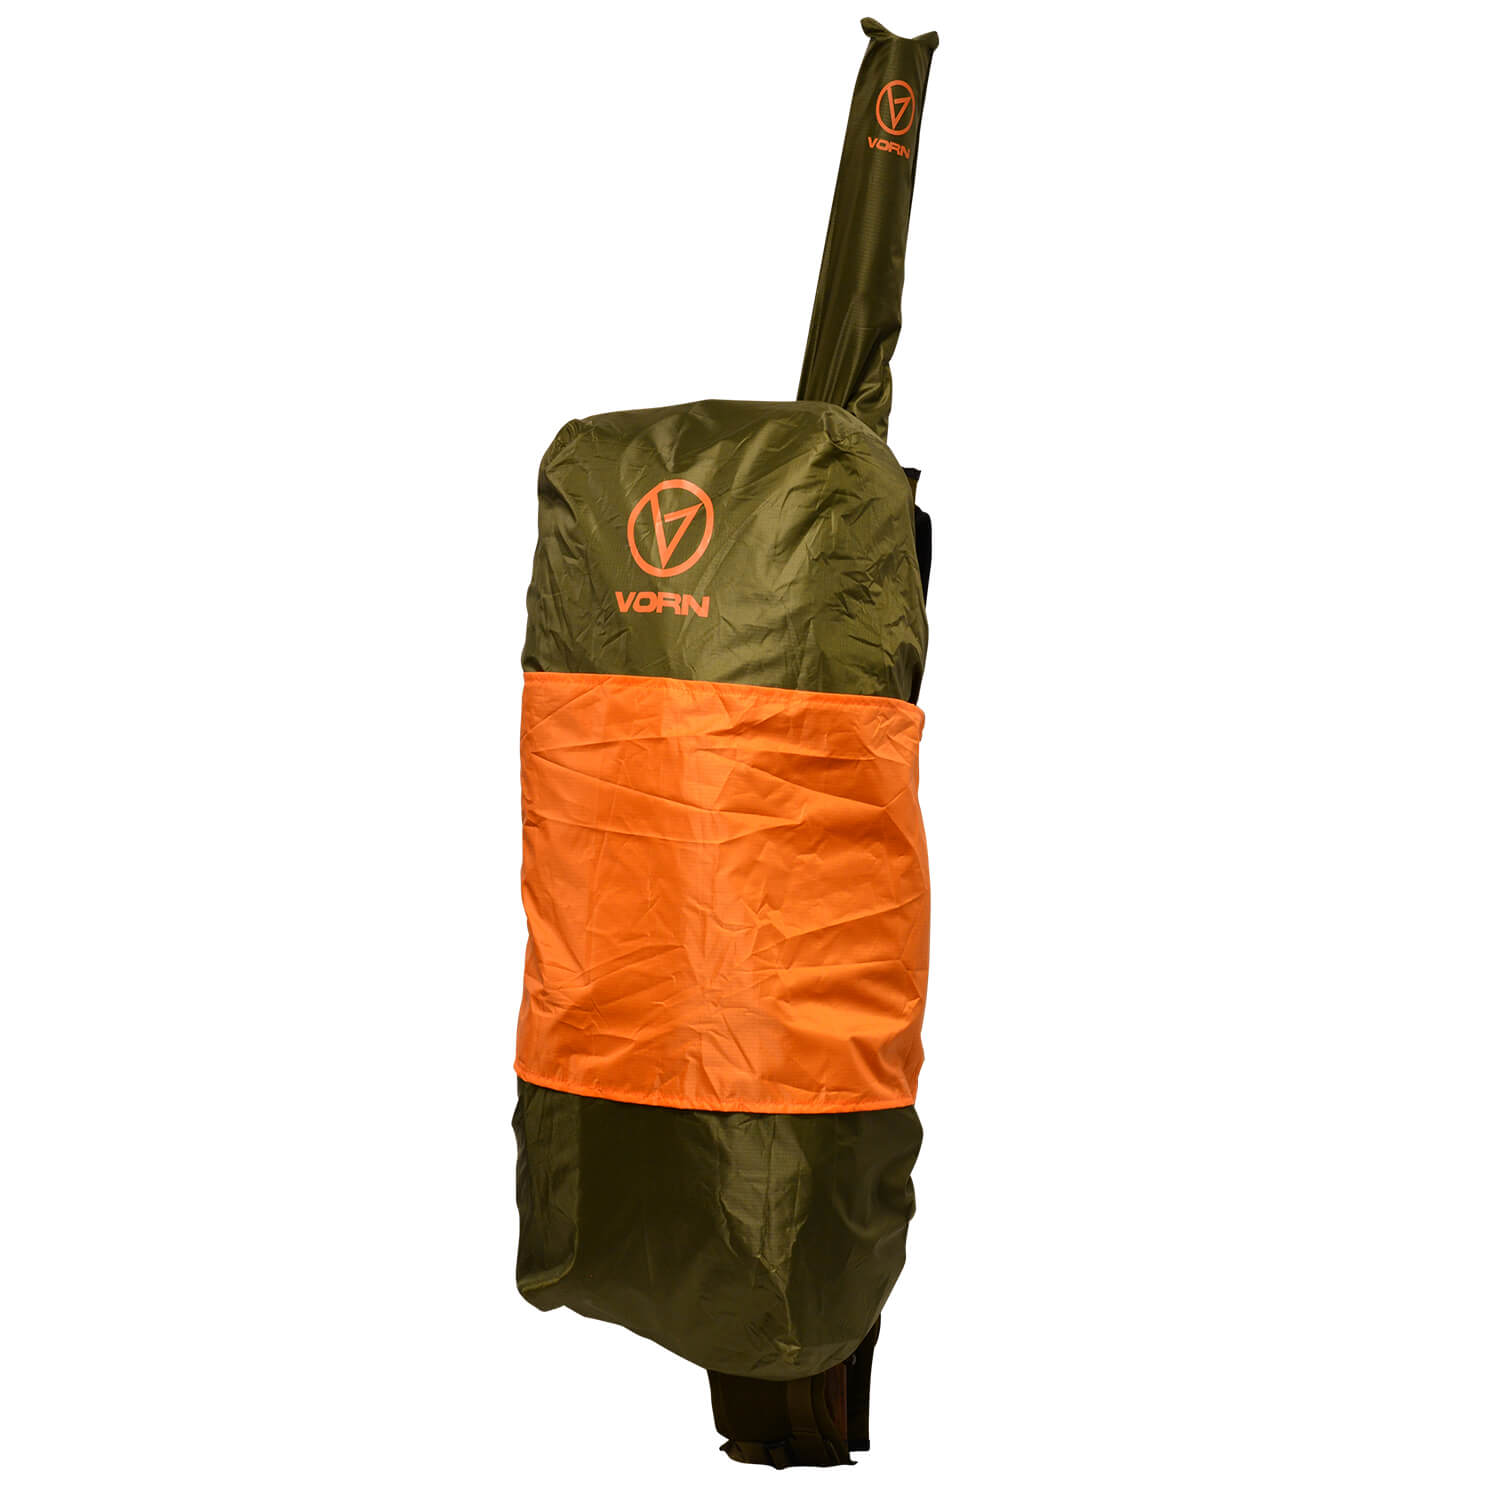 Vorn Backpack Rain Cover - Backpacks